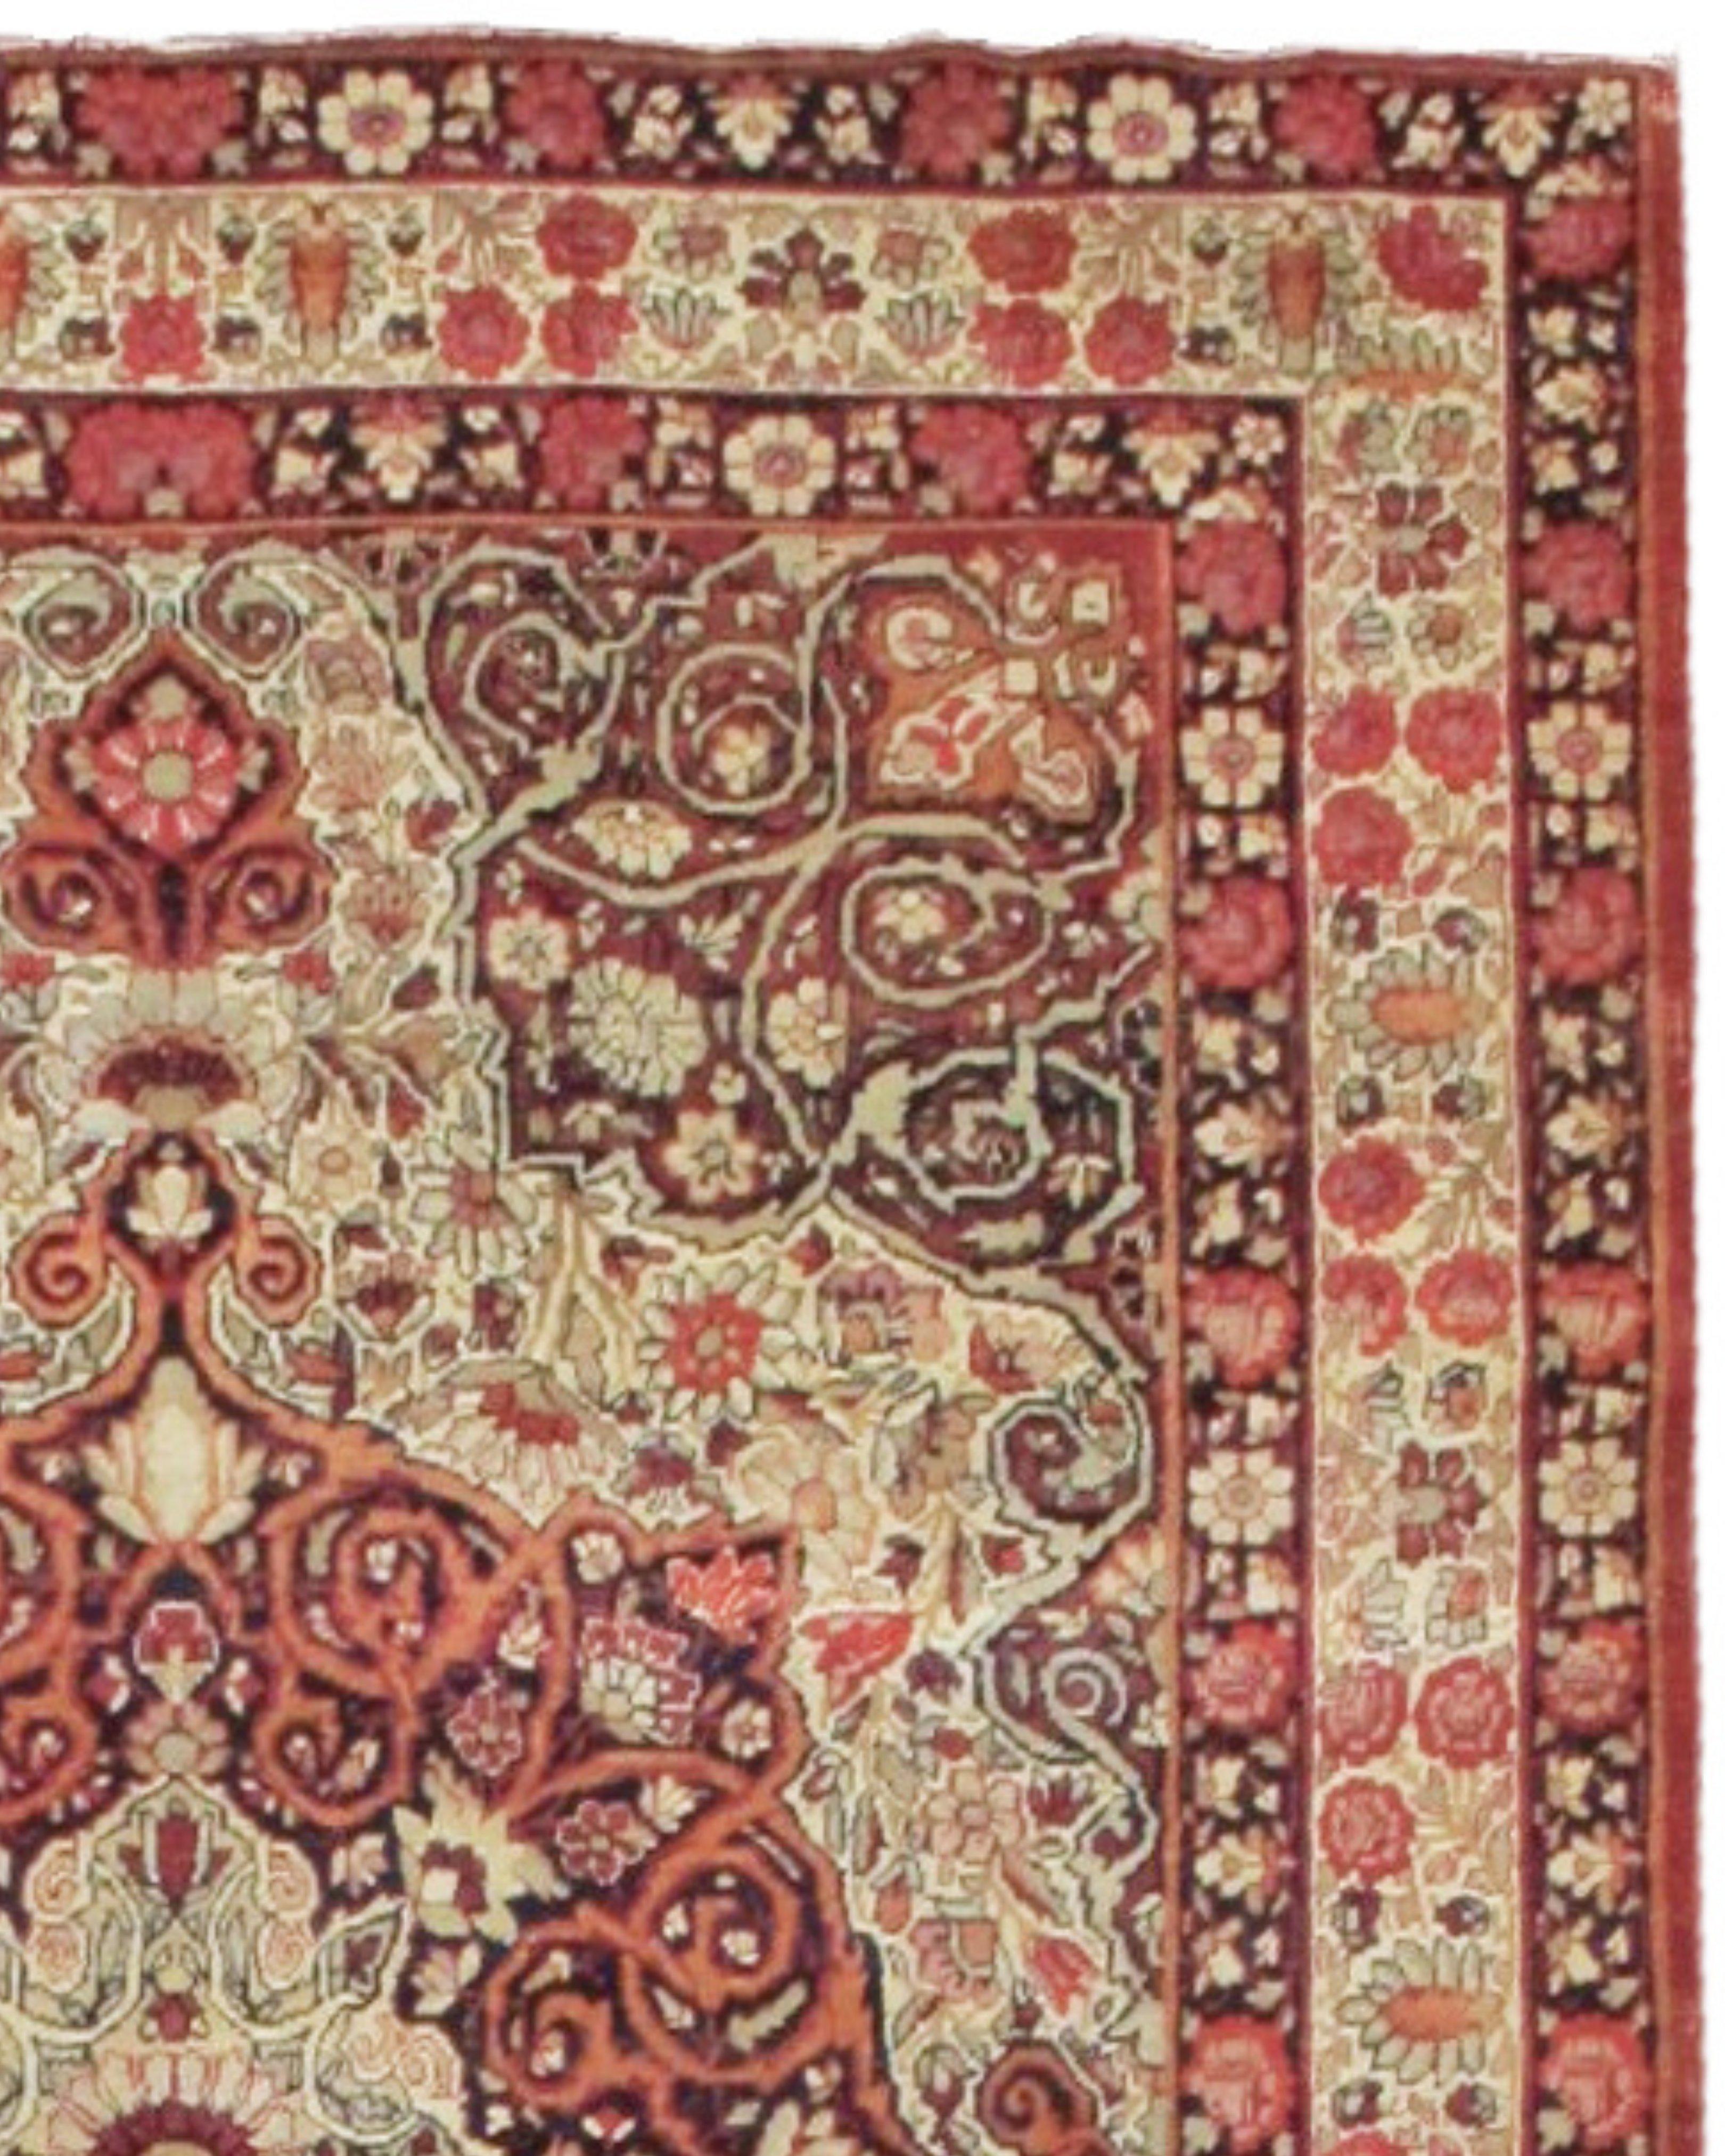 Antiker persischer Kirman-Teppich, um 1900

Zusätzliche Informationen:
Abmessungen: 4'5